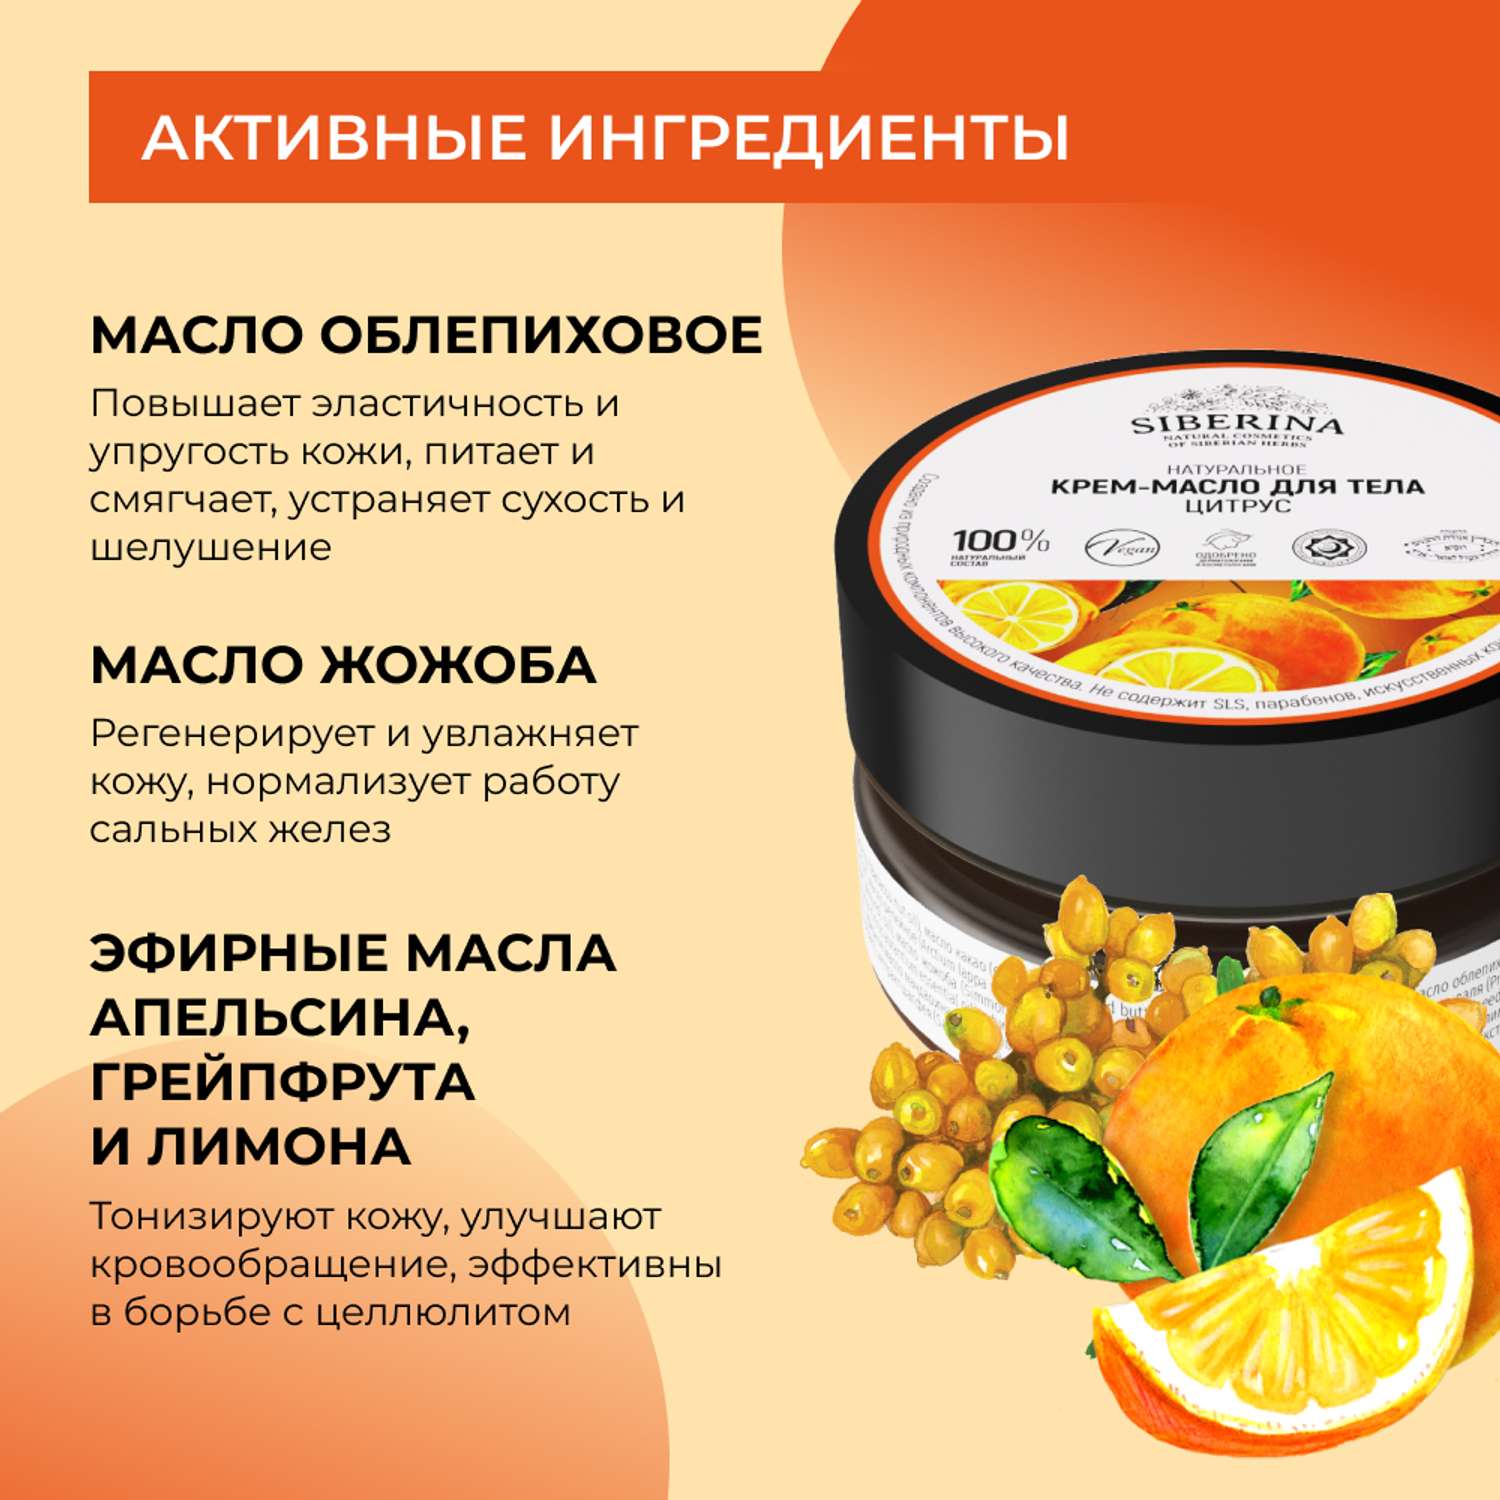 Крем-масло Siberina натуральное «Цитрус» антицеллюлитное 60 мл - фото 5